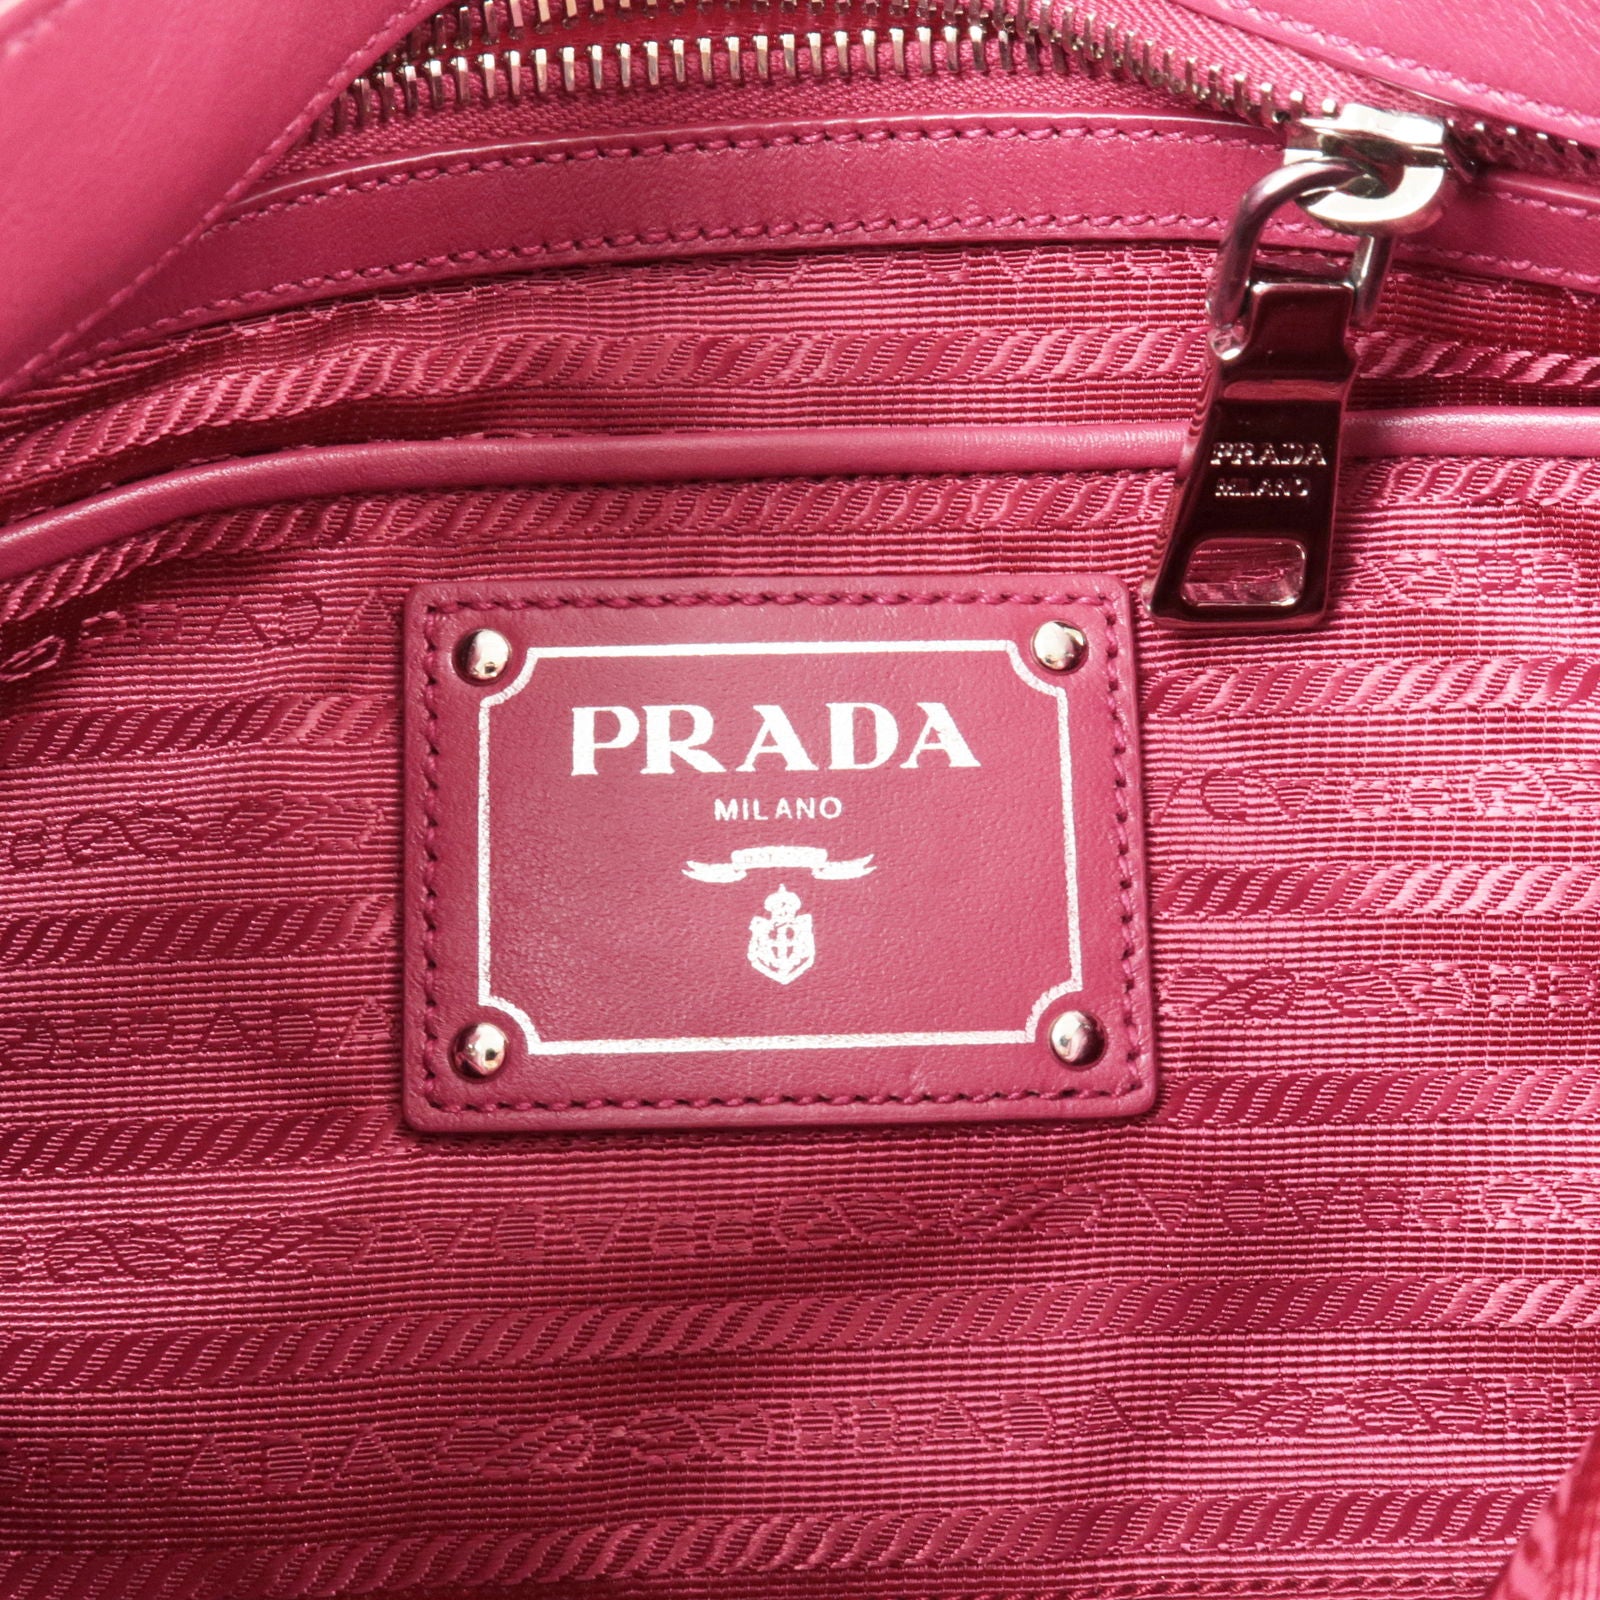 prada bag pink